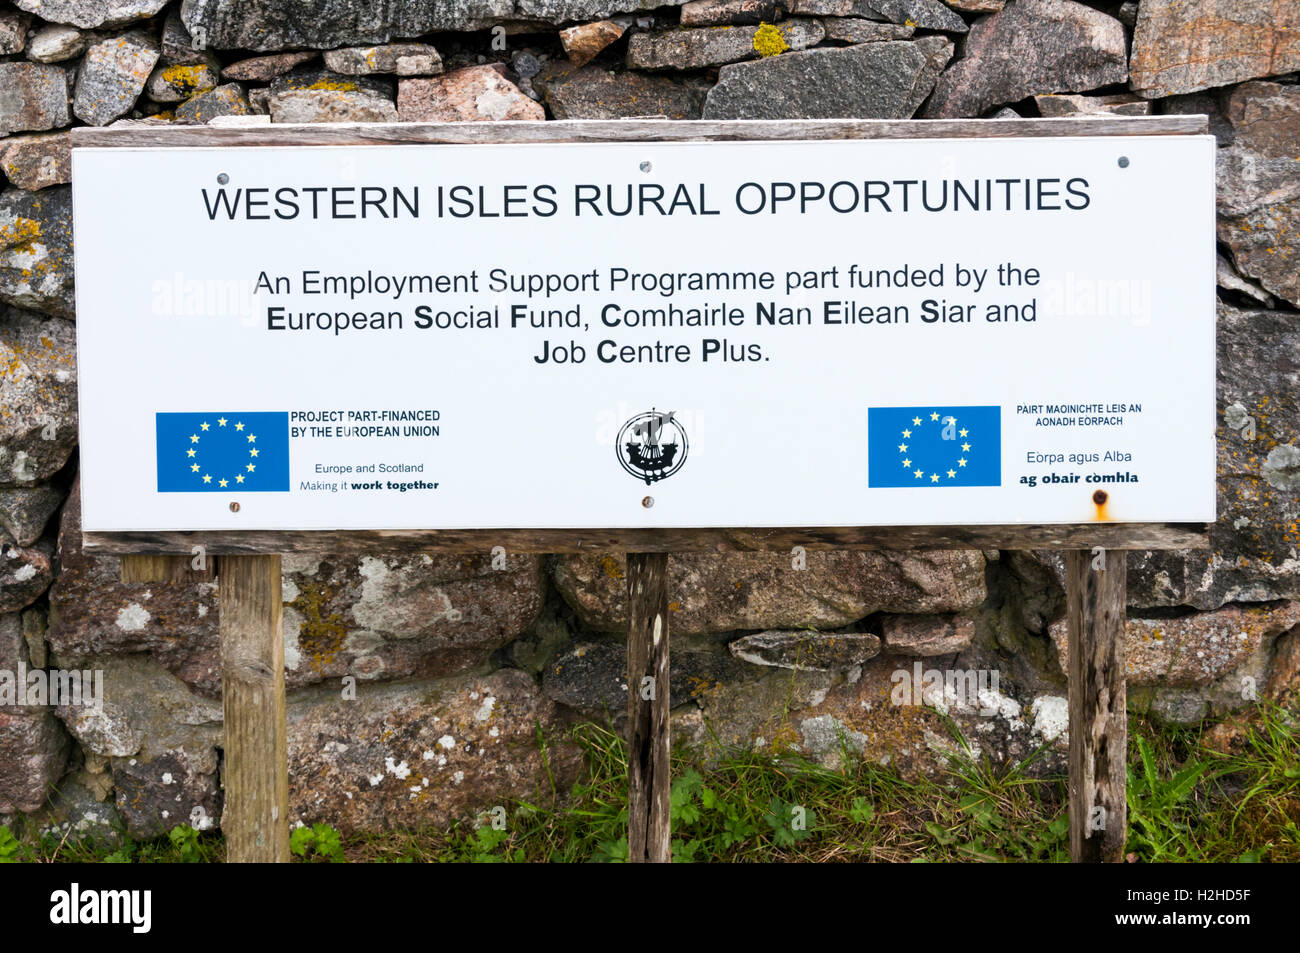 Bandiera europea o del logo UE insegne sul segno per parzialmente finanziati dalla UE Western Isles opportunità rurali su Harris nelle Ebridi Esterne, Scozia. Foto Stock